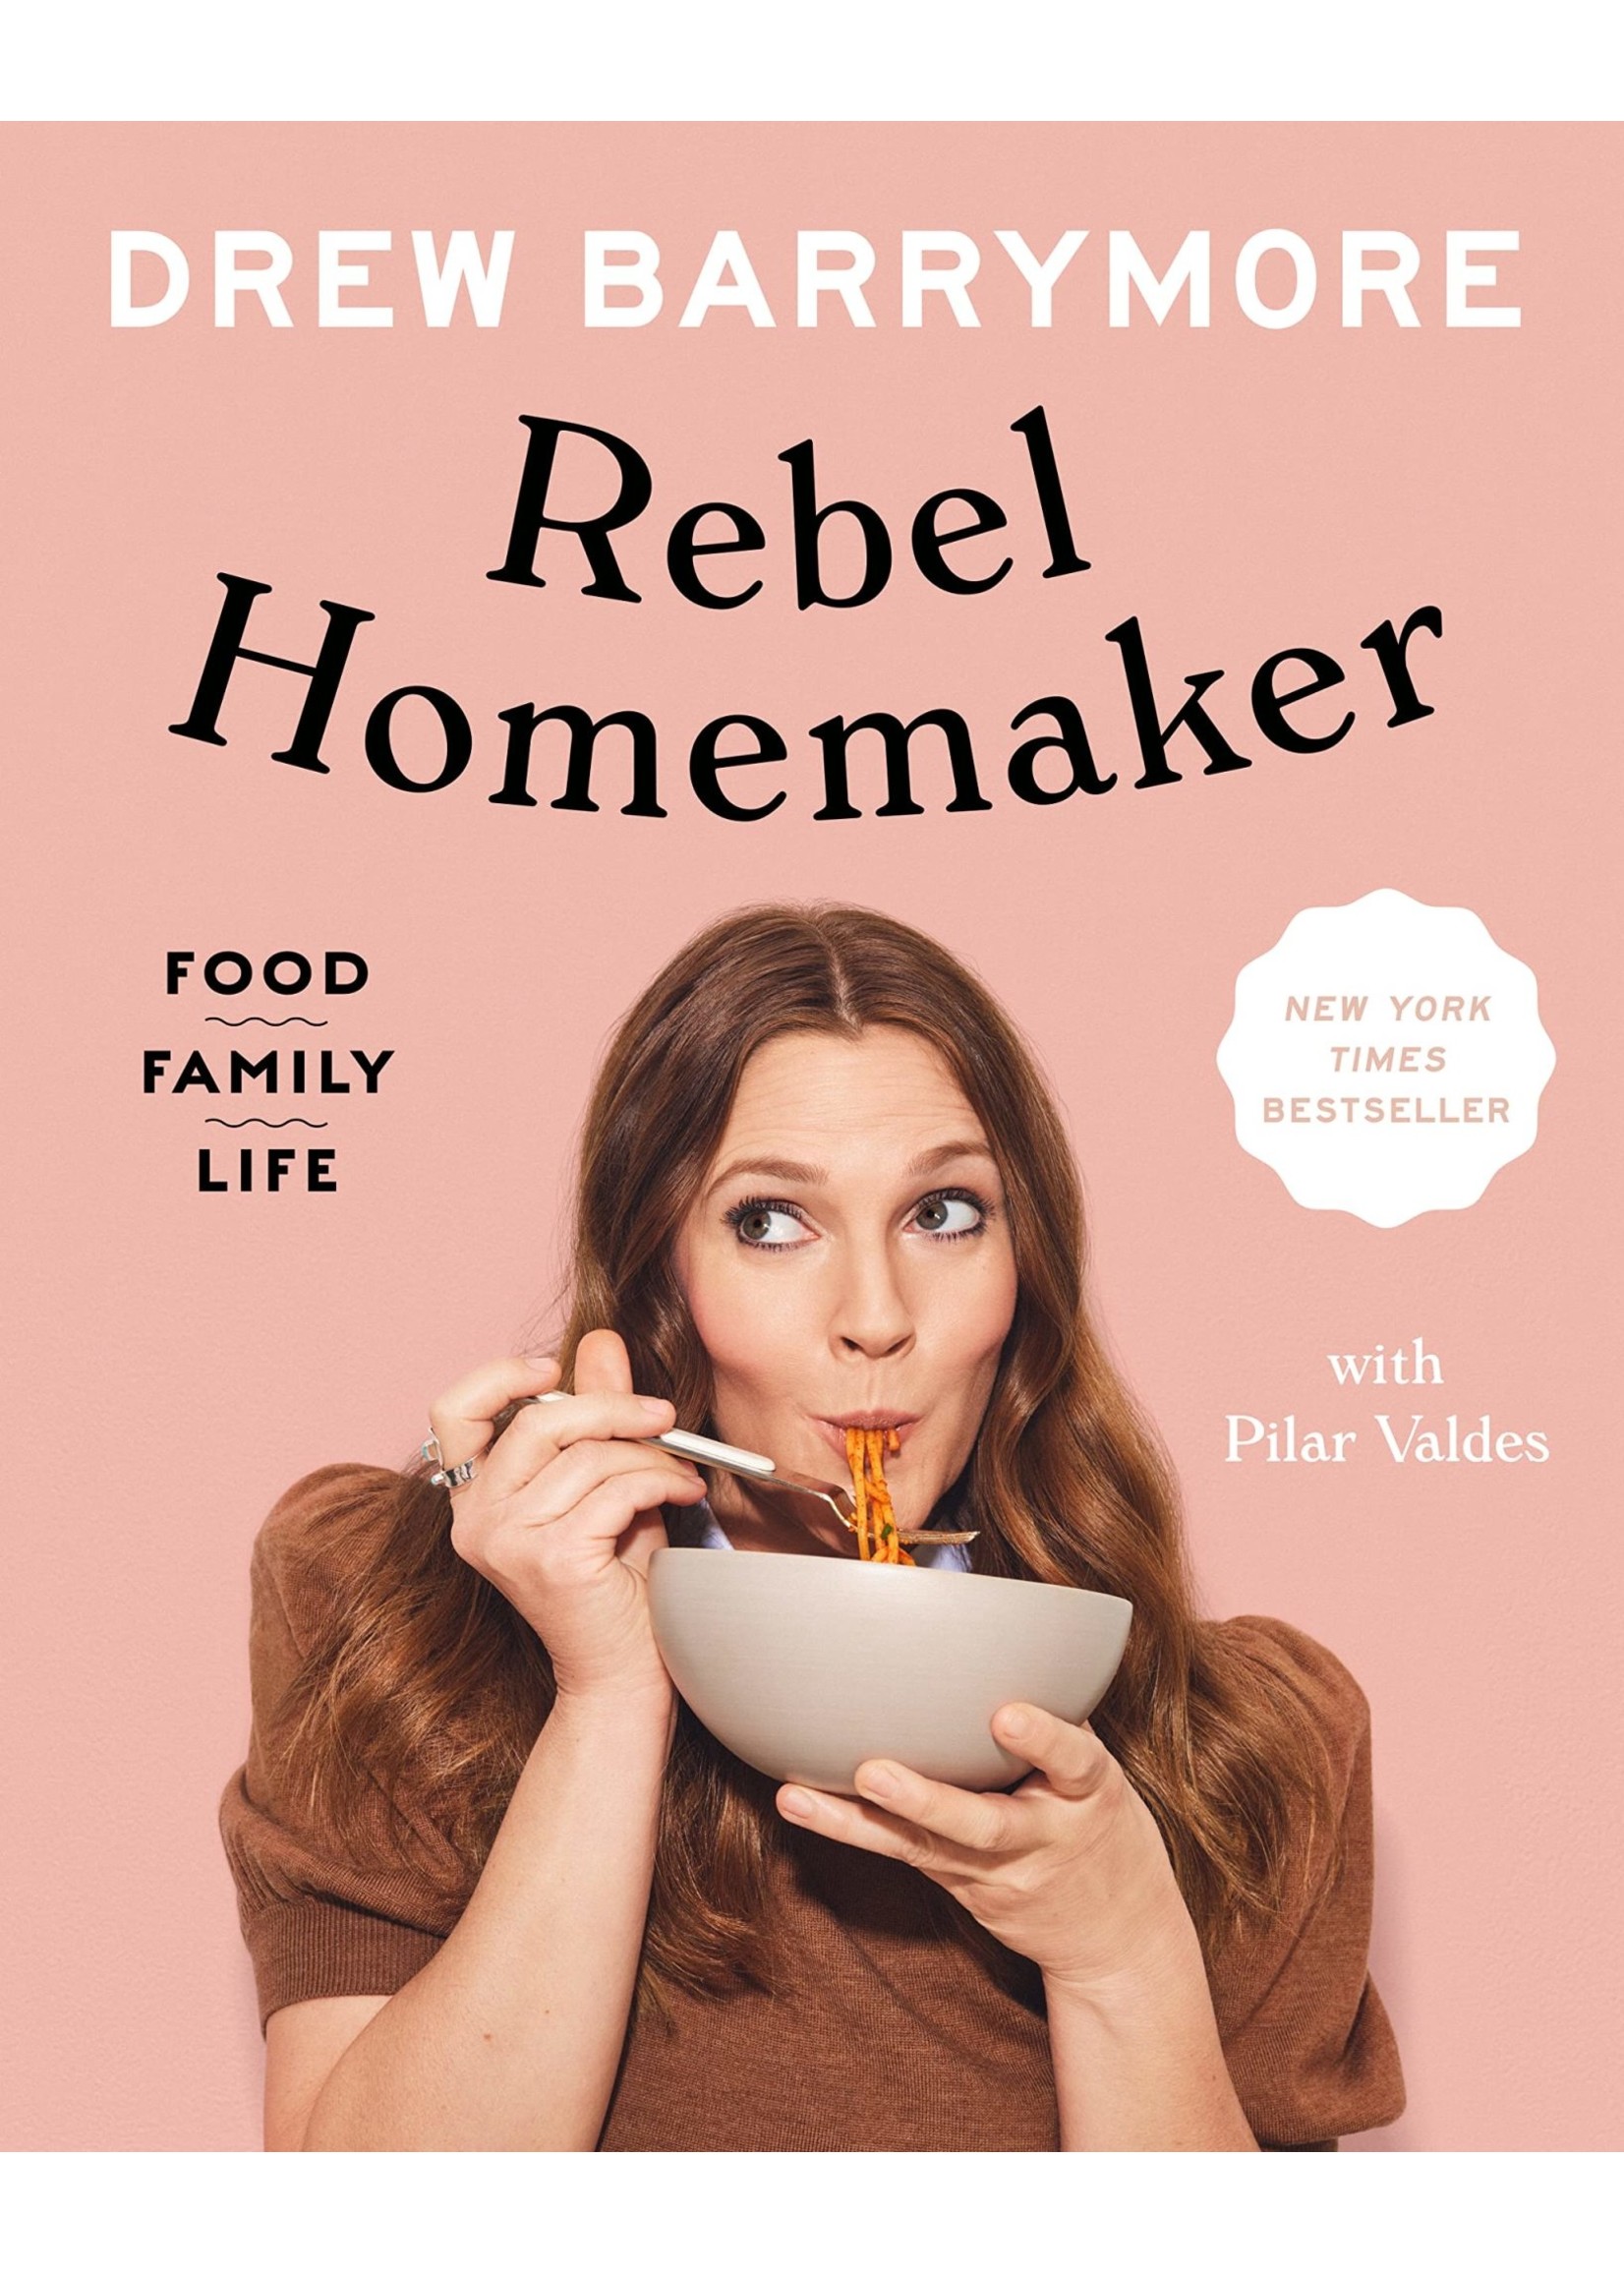 Rebel Homemaker - Food, Family & Life